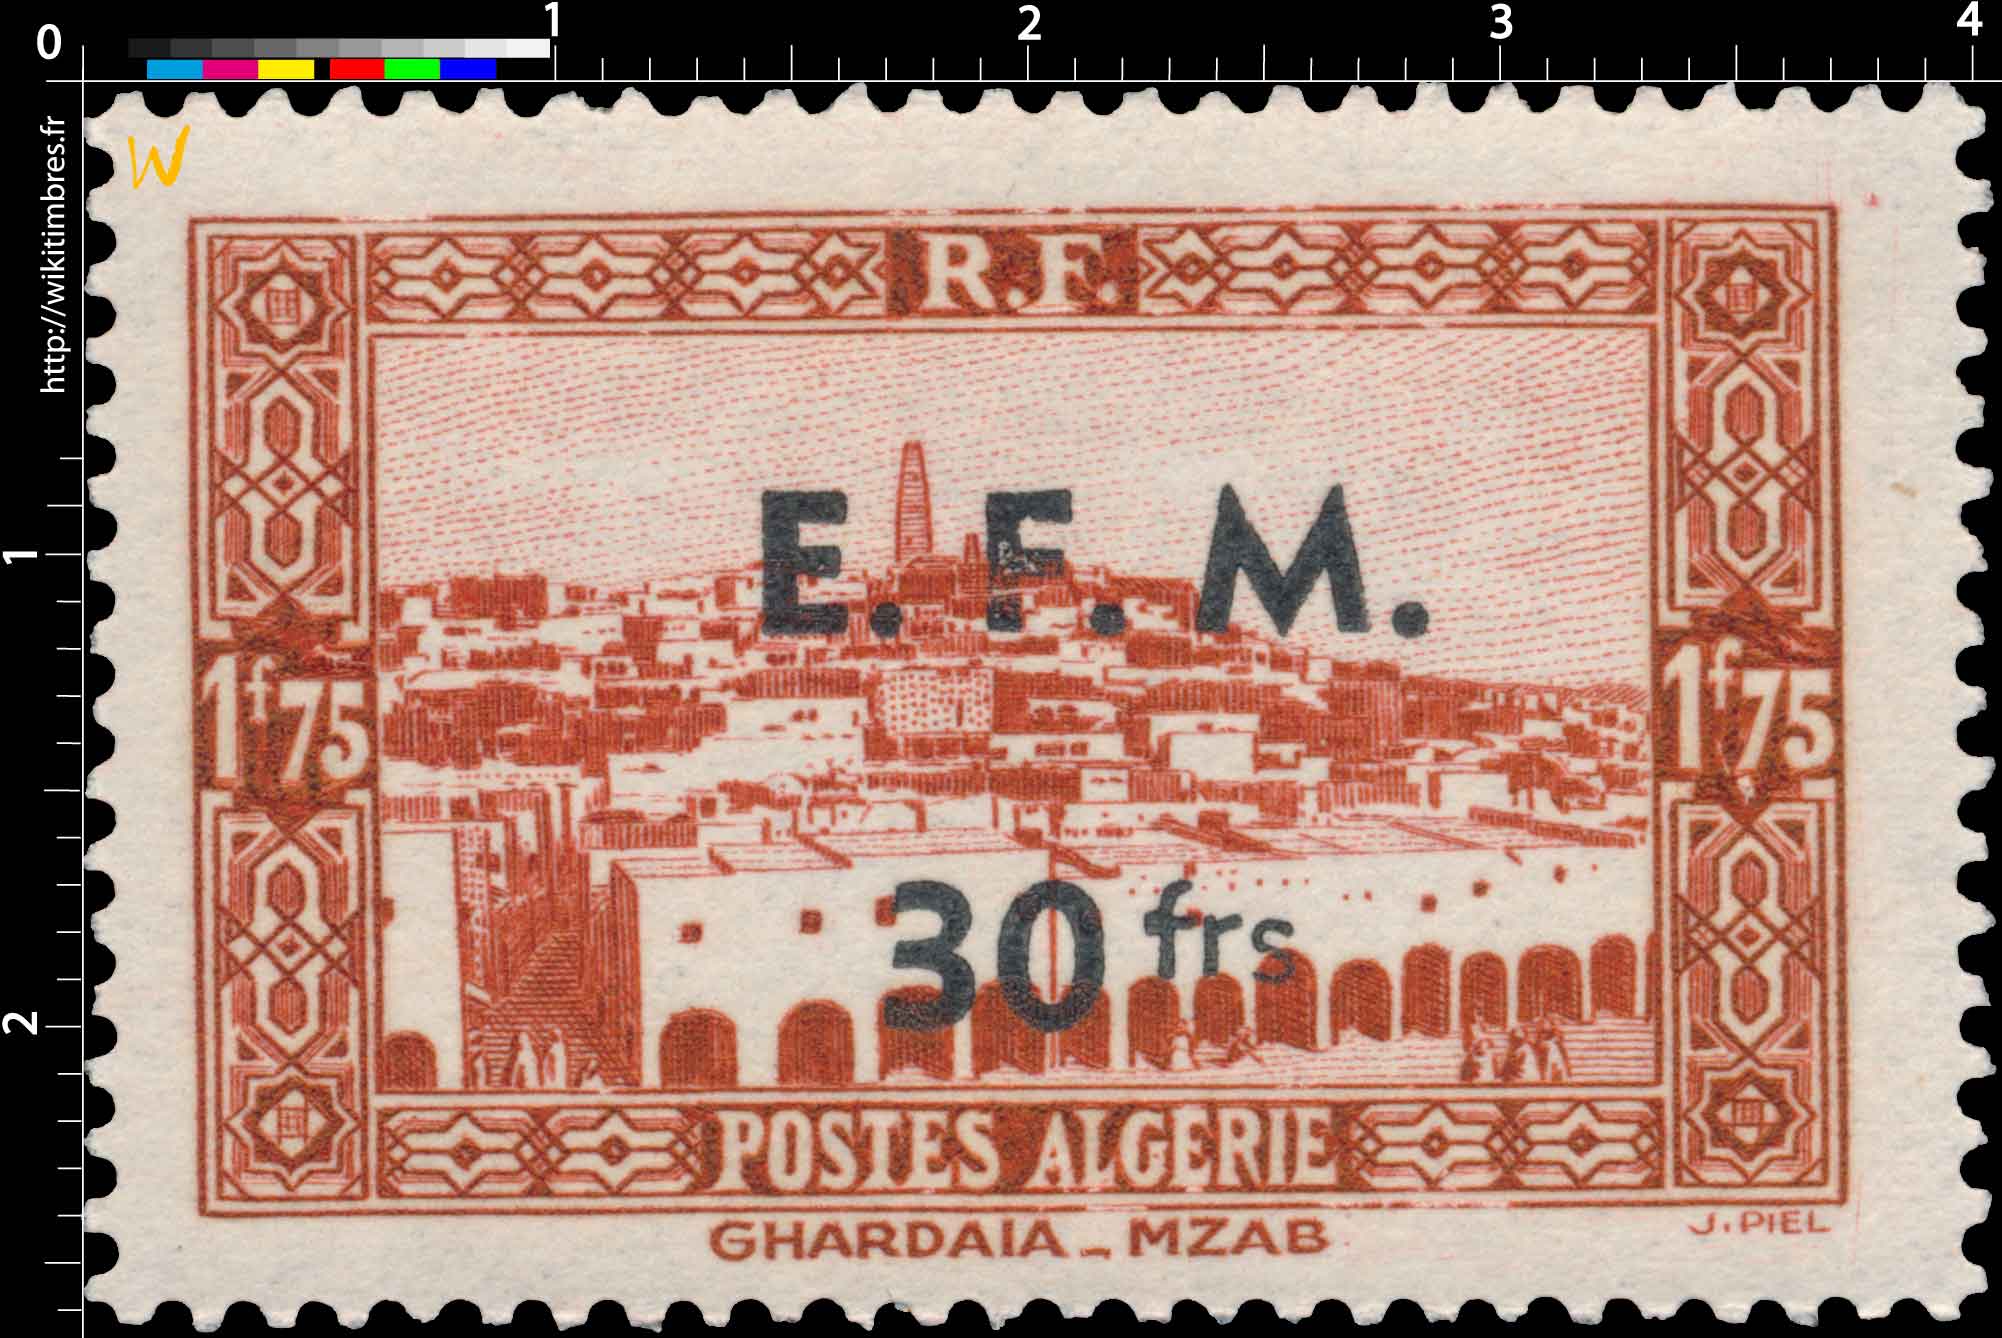 Algérie - Ghardaia - Mzab